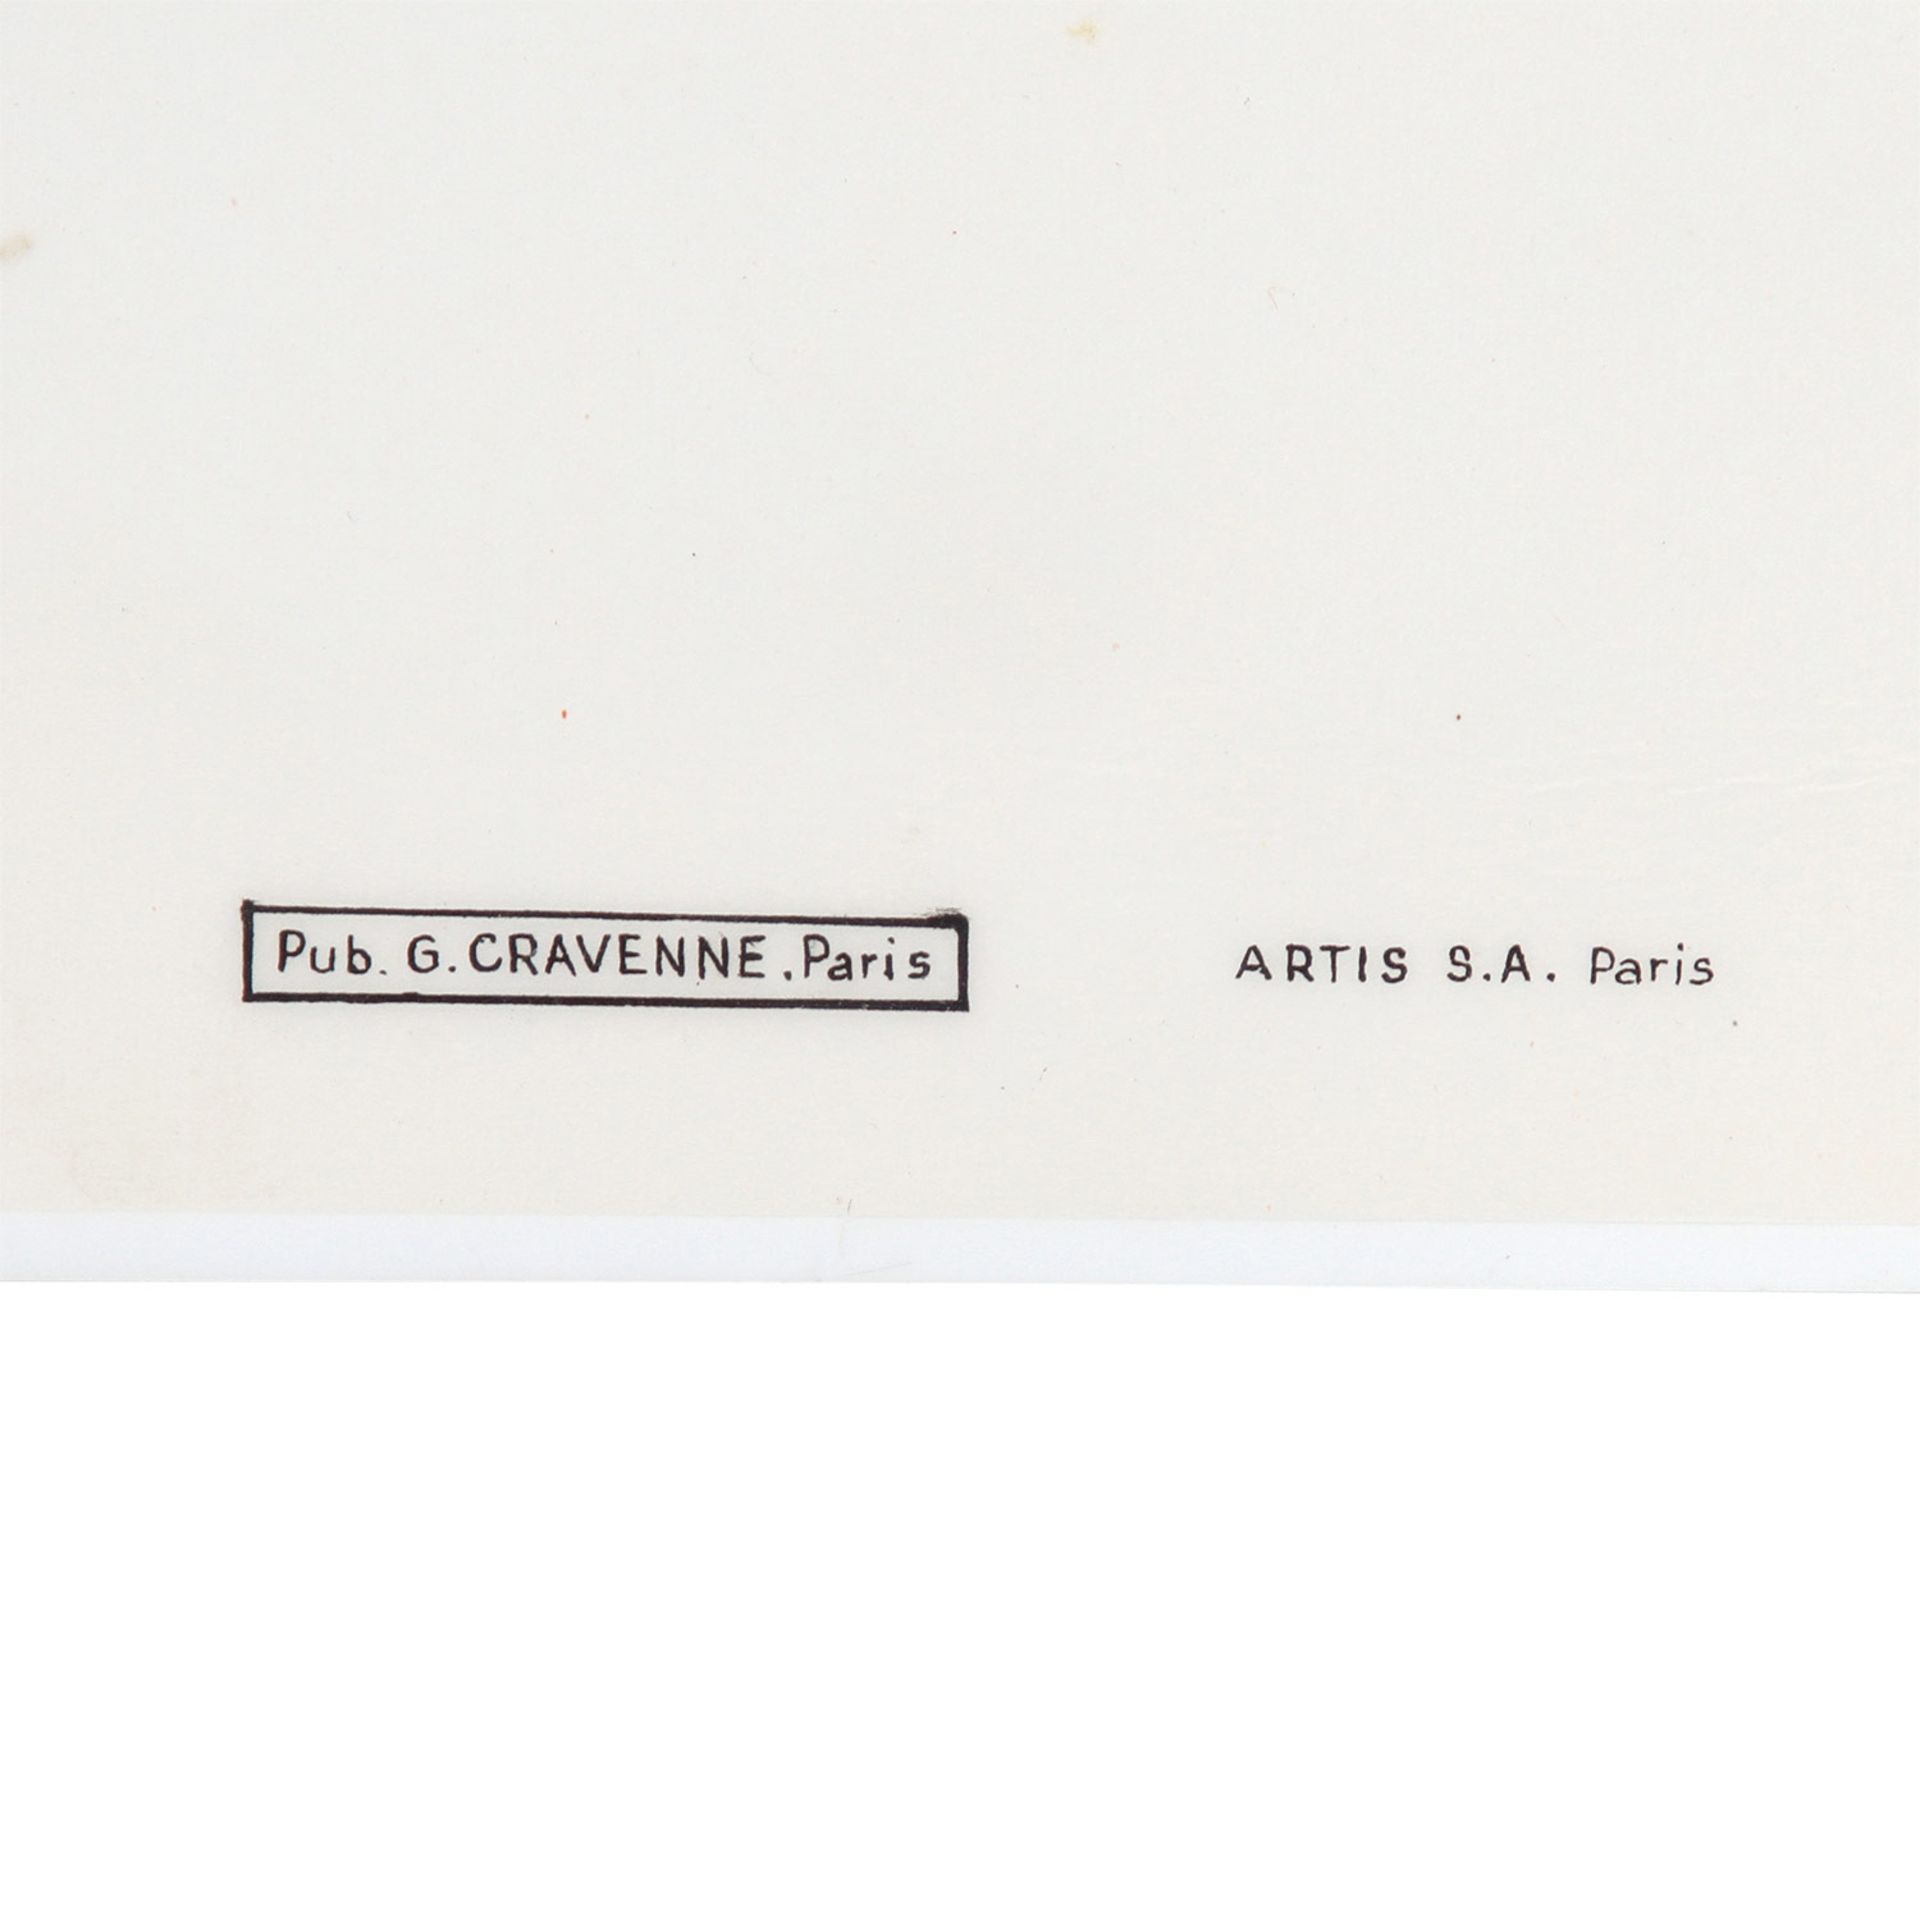 Werbetafel zur Show "BAL DU MOULIN ROUGE - FANTASTIC", Paris 1970, Entwurf RENÉ GRUAU,Serigraphie/ - Image 3 of 3